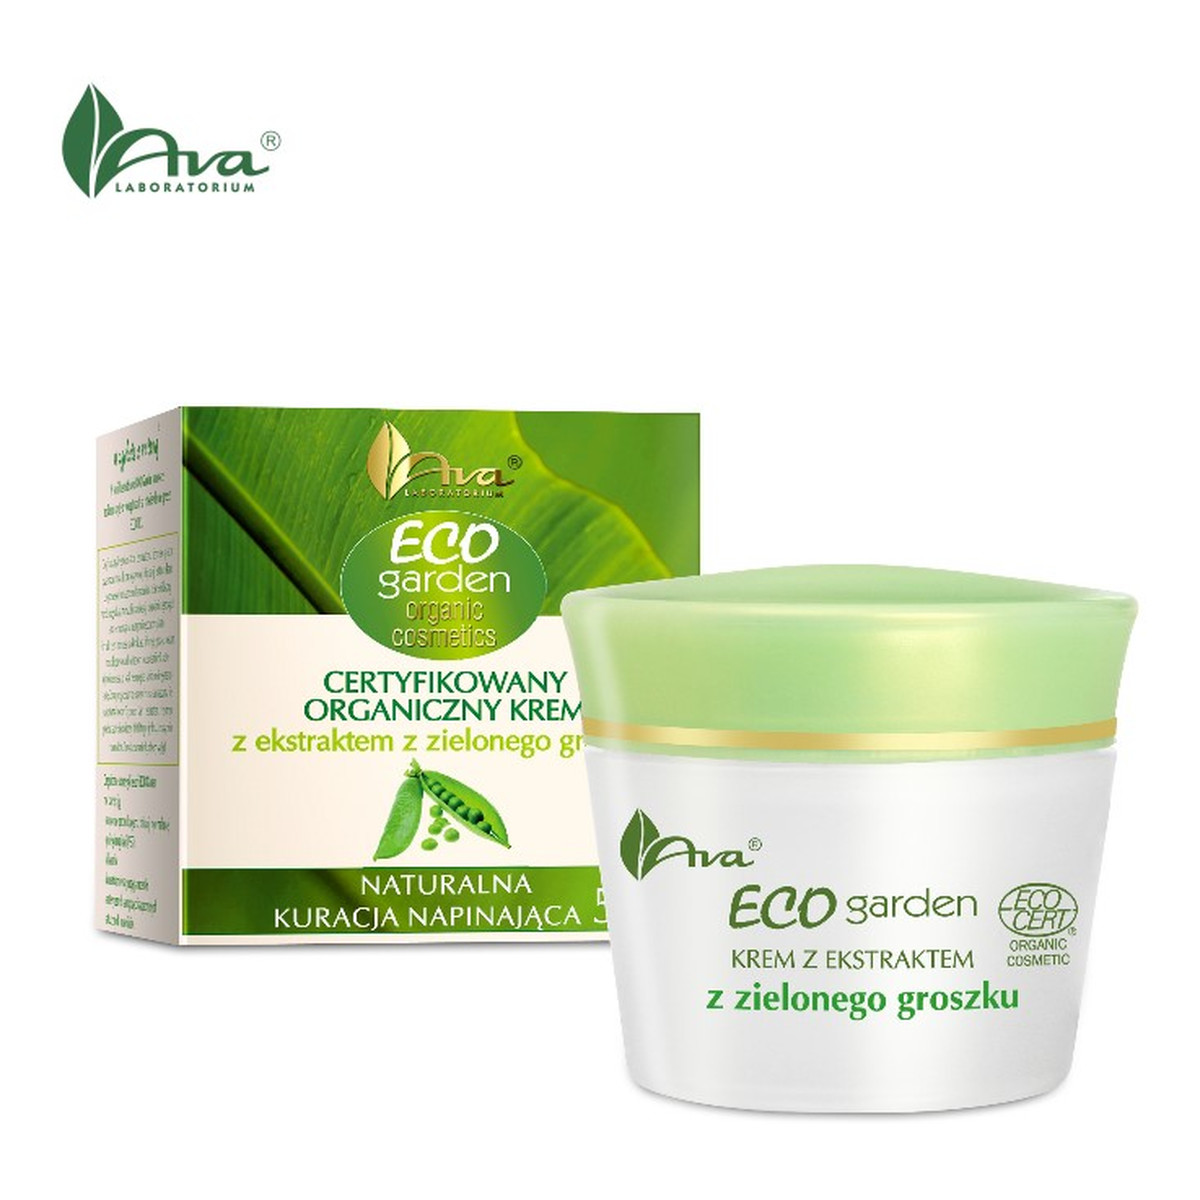 Ava Laboratorium ECO Garden Certyfikowany organiczny krem z ekstraktem z zielonego groszku - Naturalna kuracja napiniająca 50+ 50ml